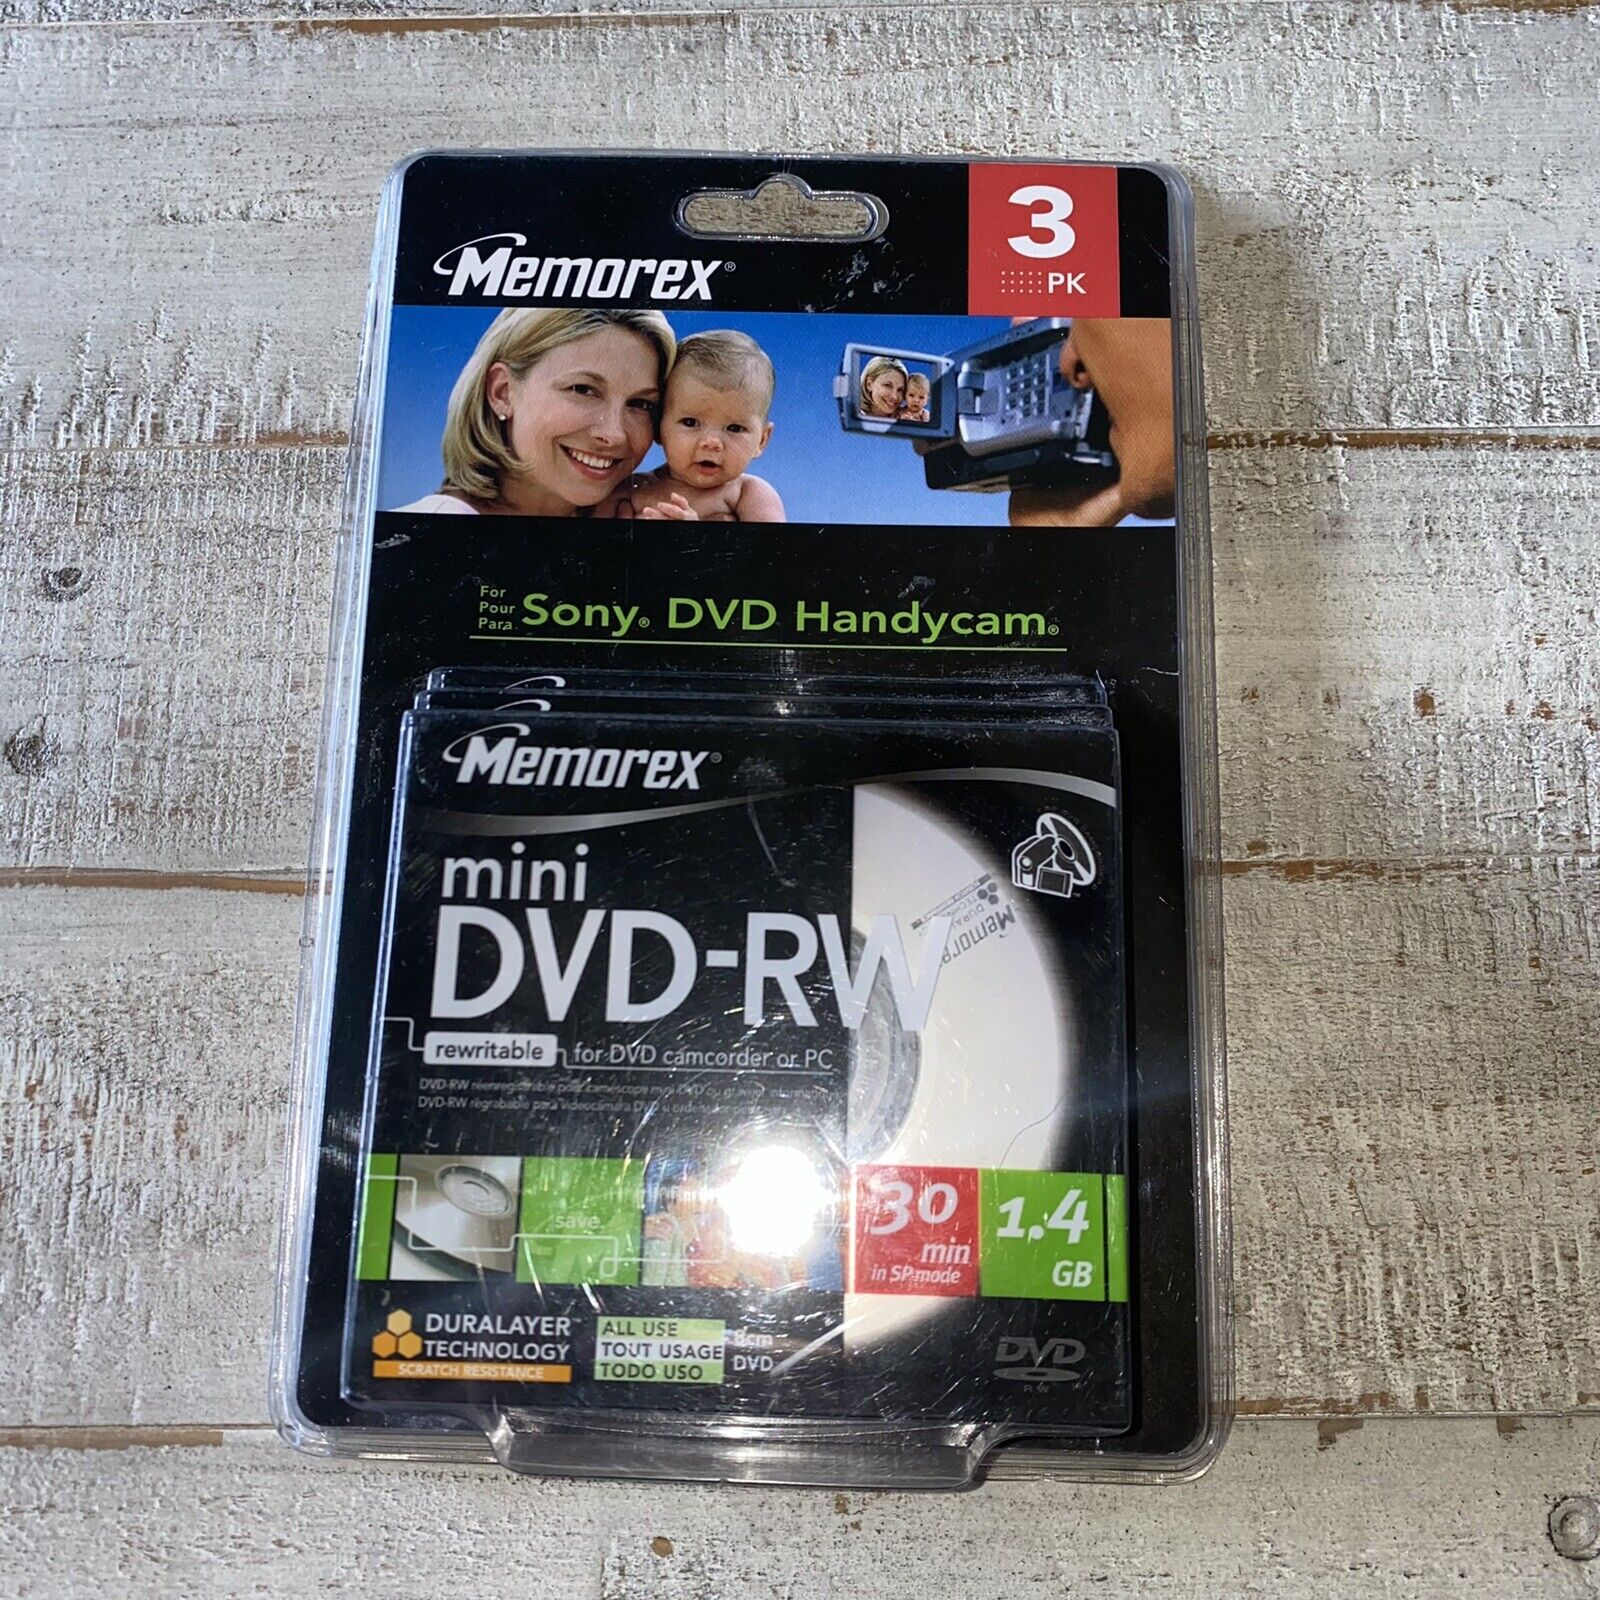 Memorex Mini DVD-RW 3 Pack 2X 1.4GB 30 min Single Sided DVD Camcorder New 